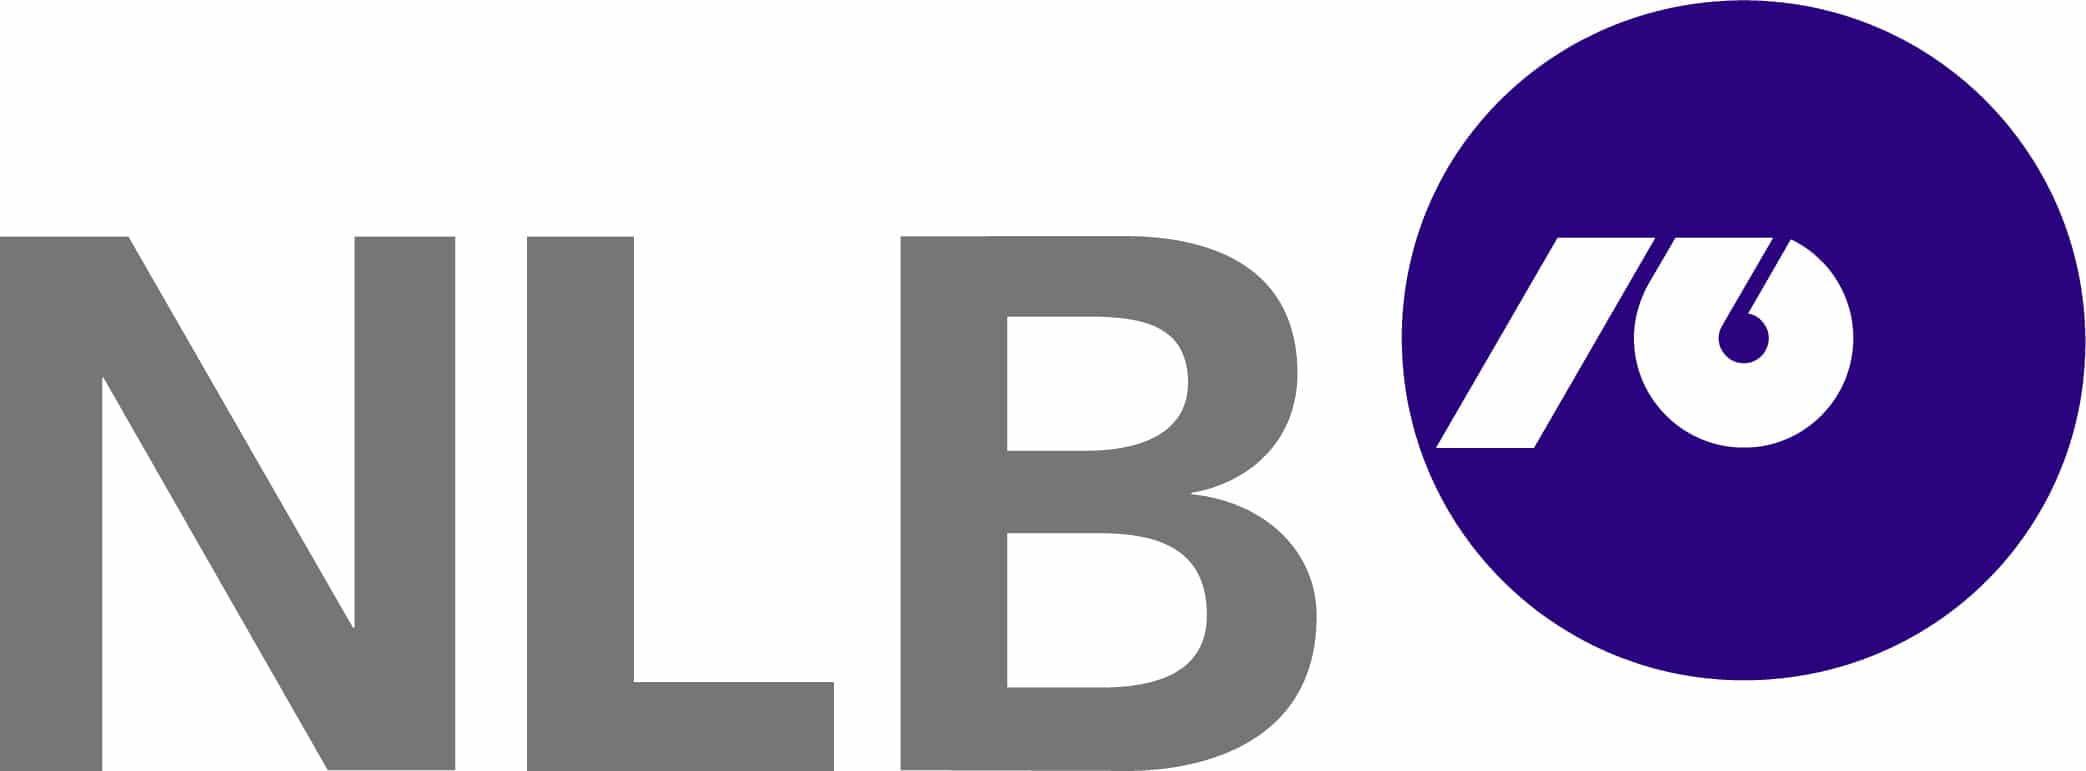 Nova Ljubljanska banka logo